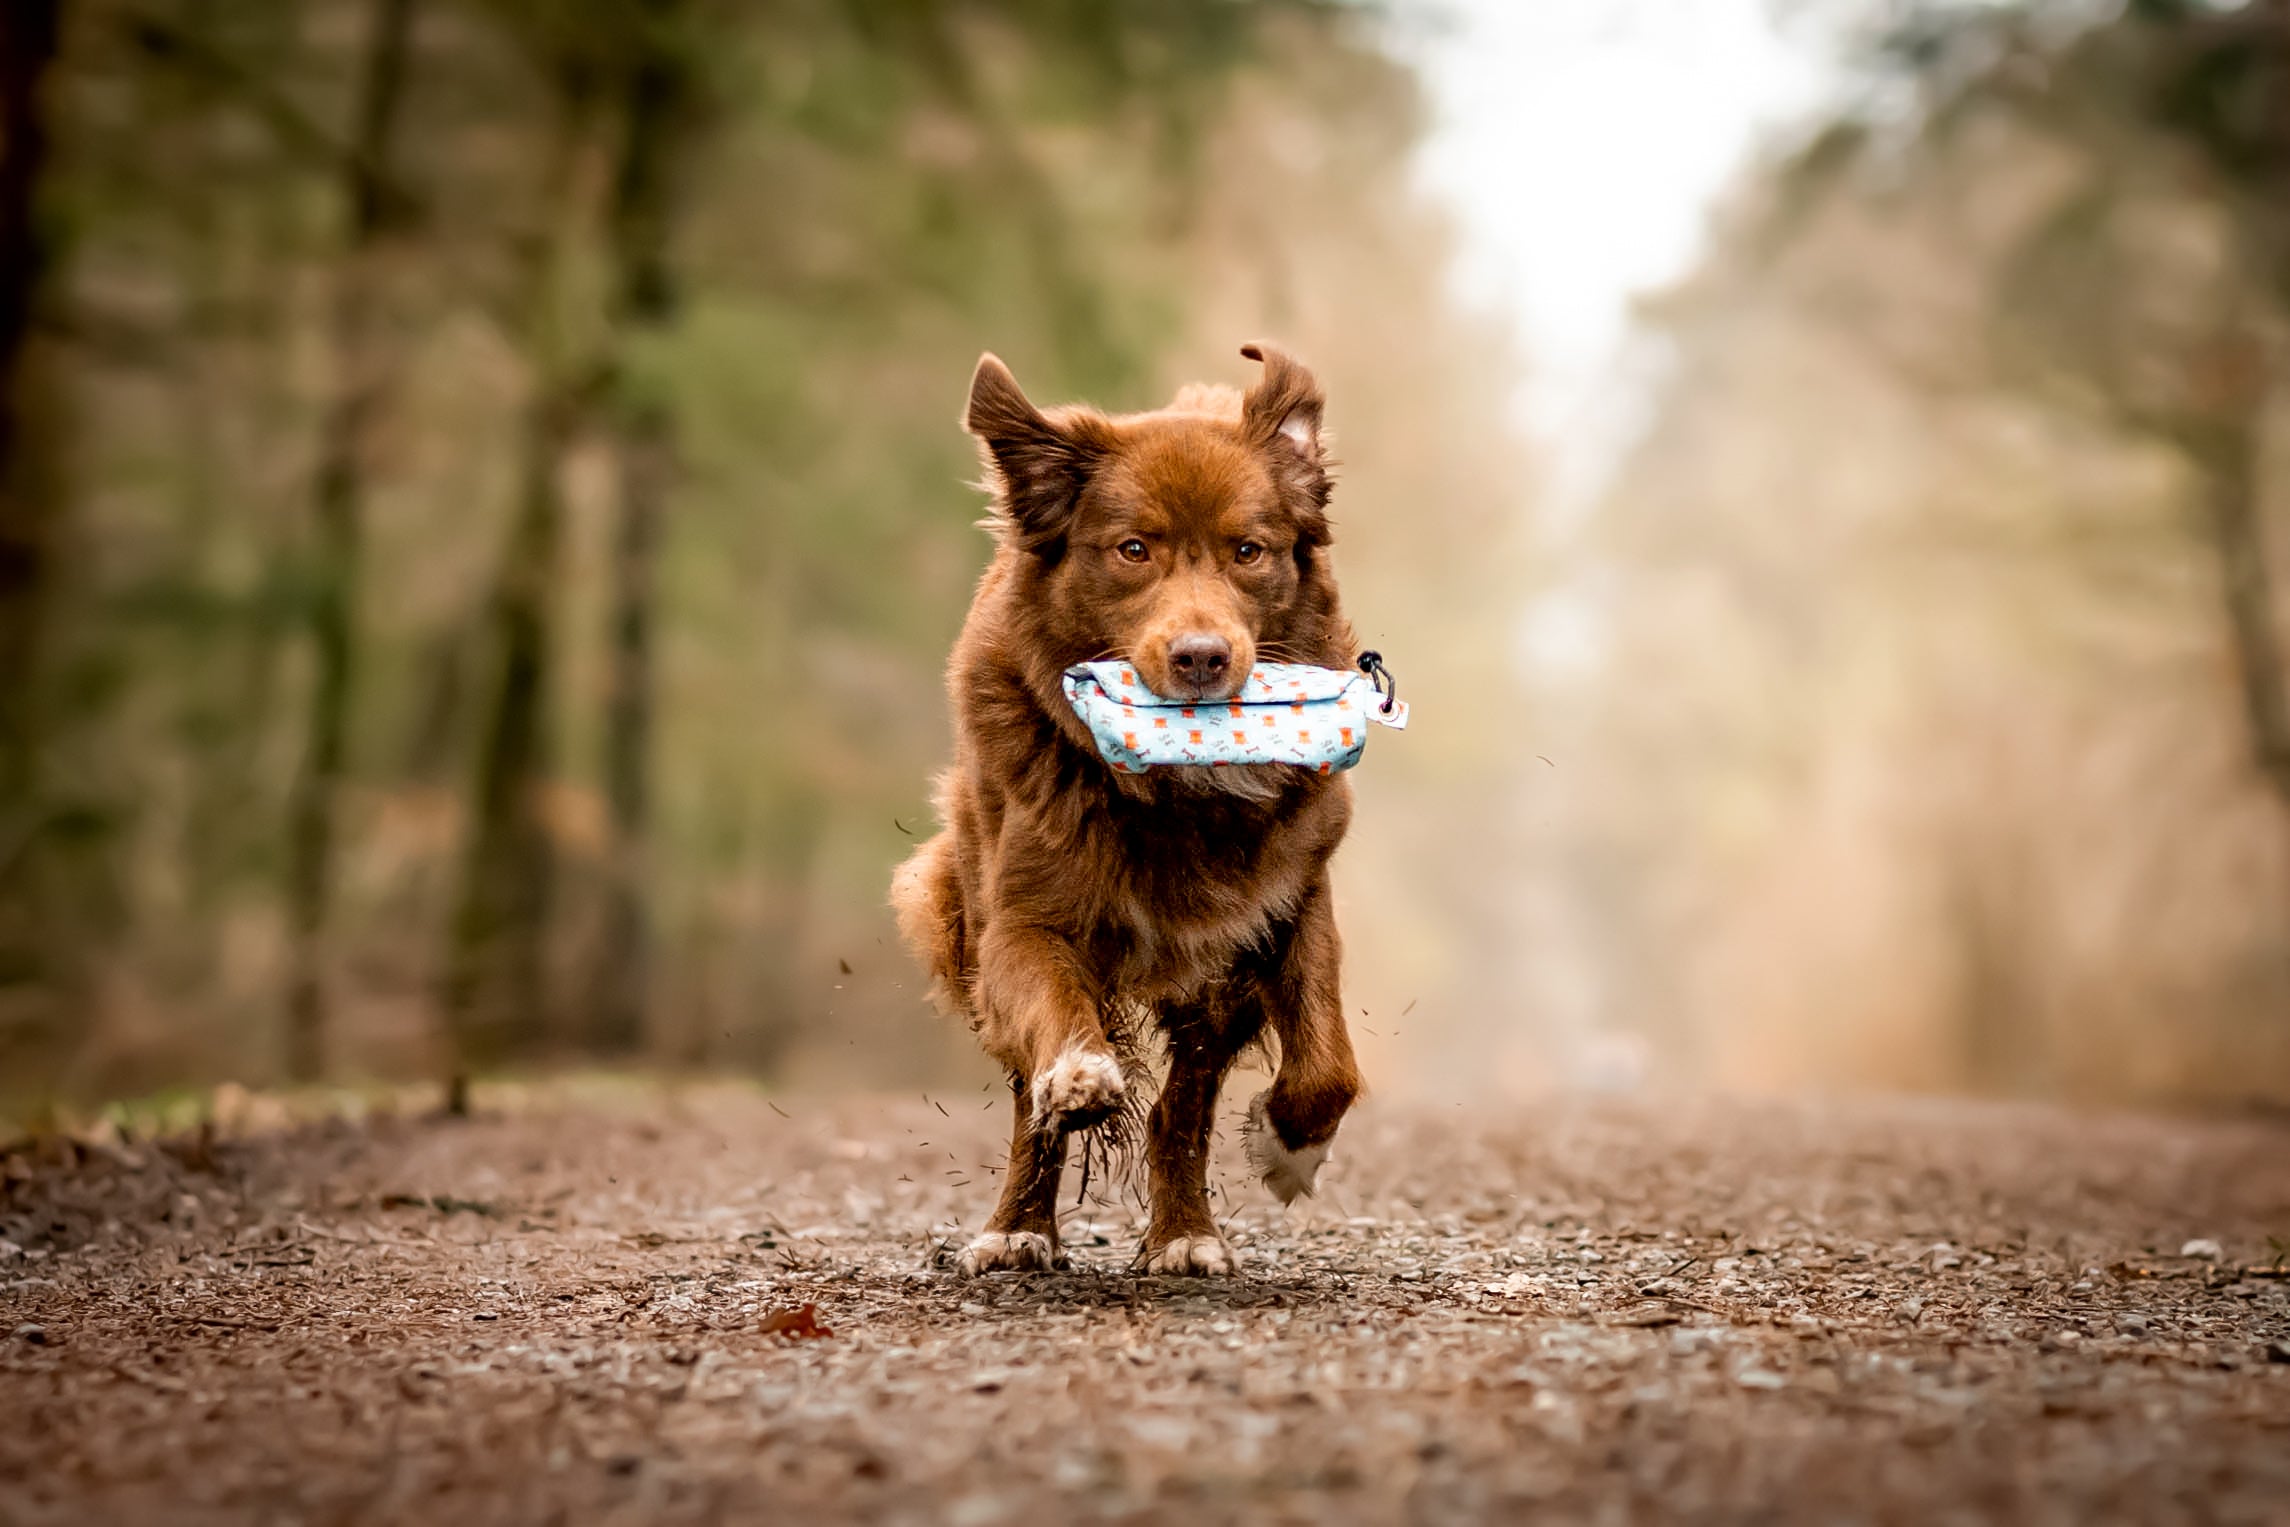 Brauner Hund läuft mit einem Futterdummy in der Farbe Blau im Maul durch den Wald. Der Hund genießt sein Training im Freien.